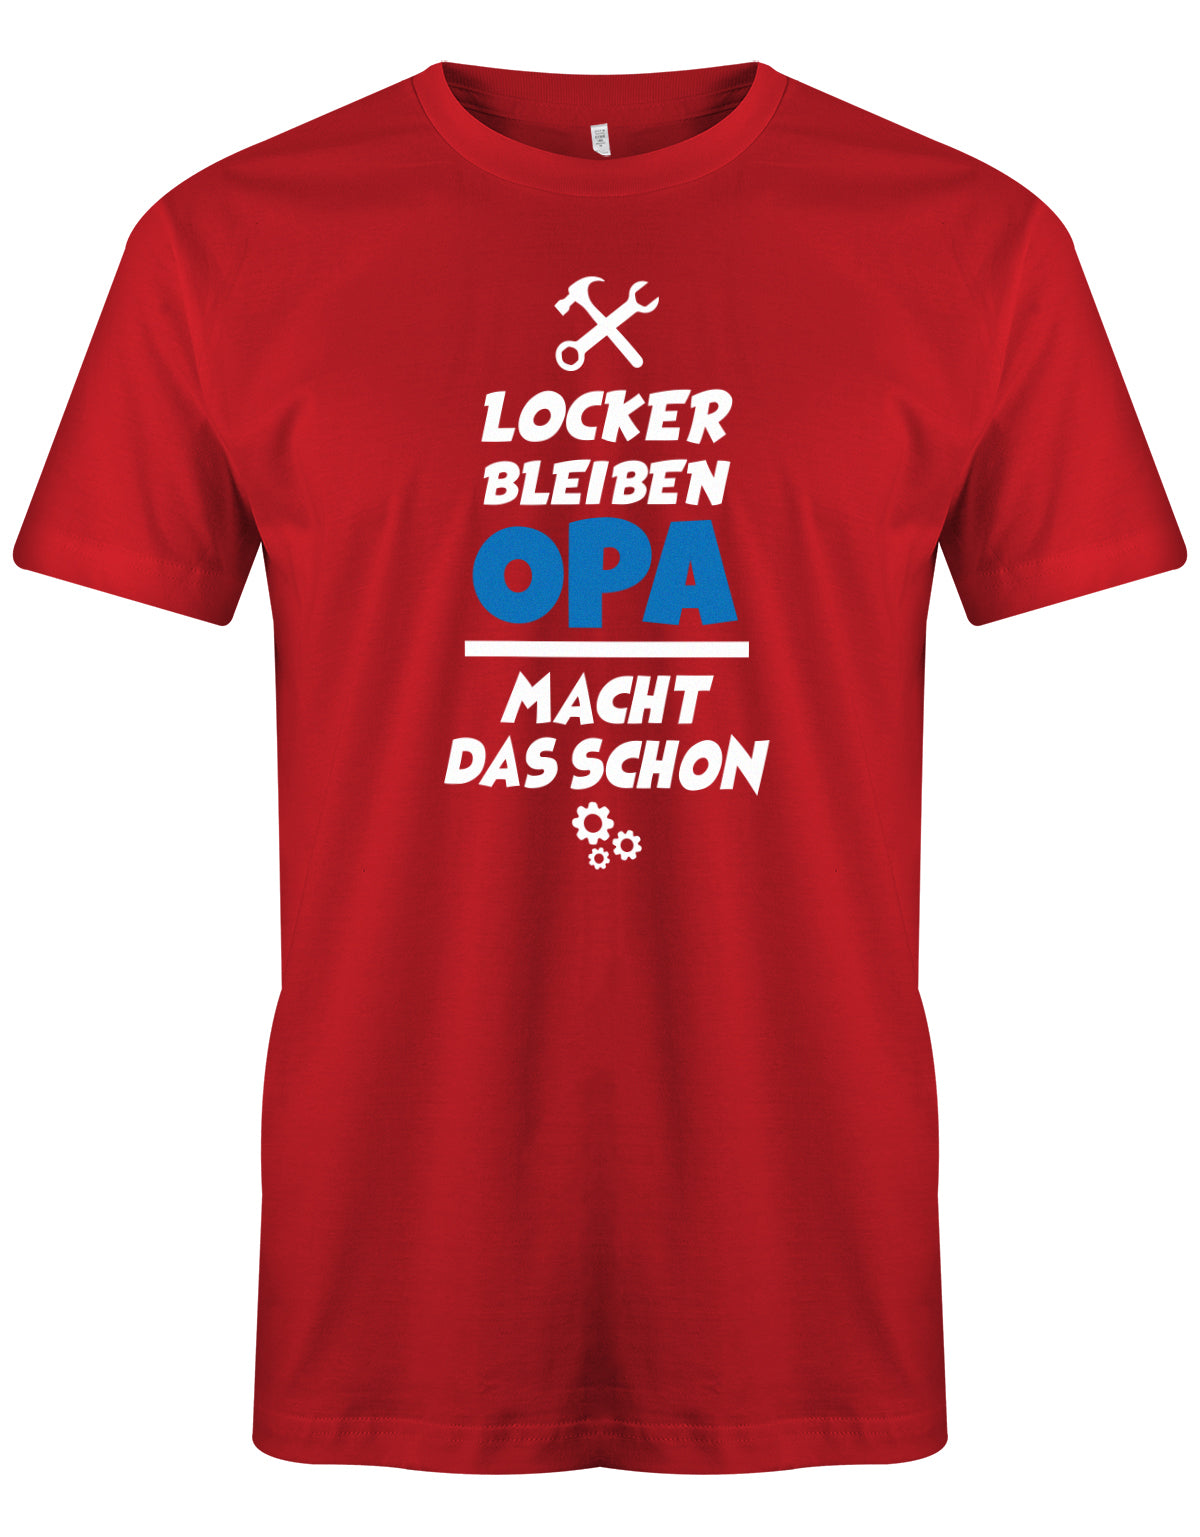 Opa T-Shirt – Locker bleiben, der Opa macht das schon.rot